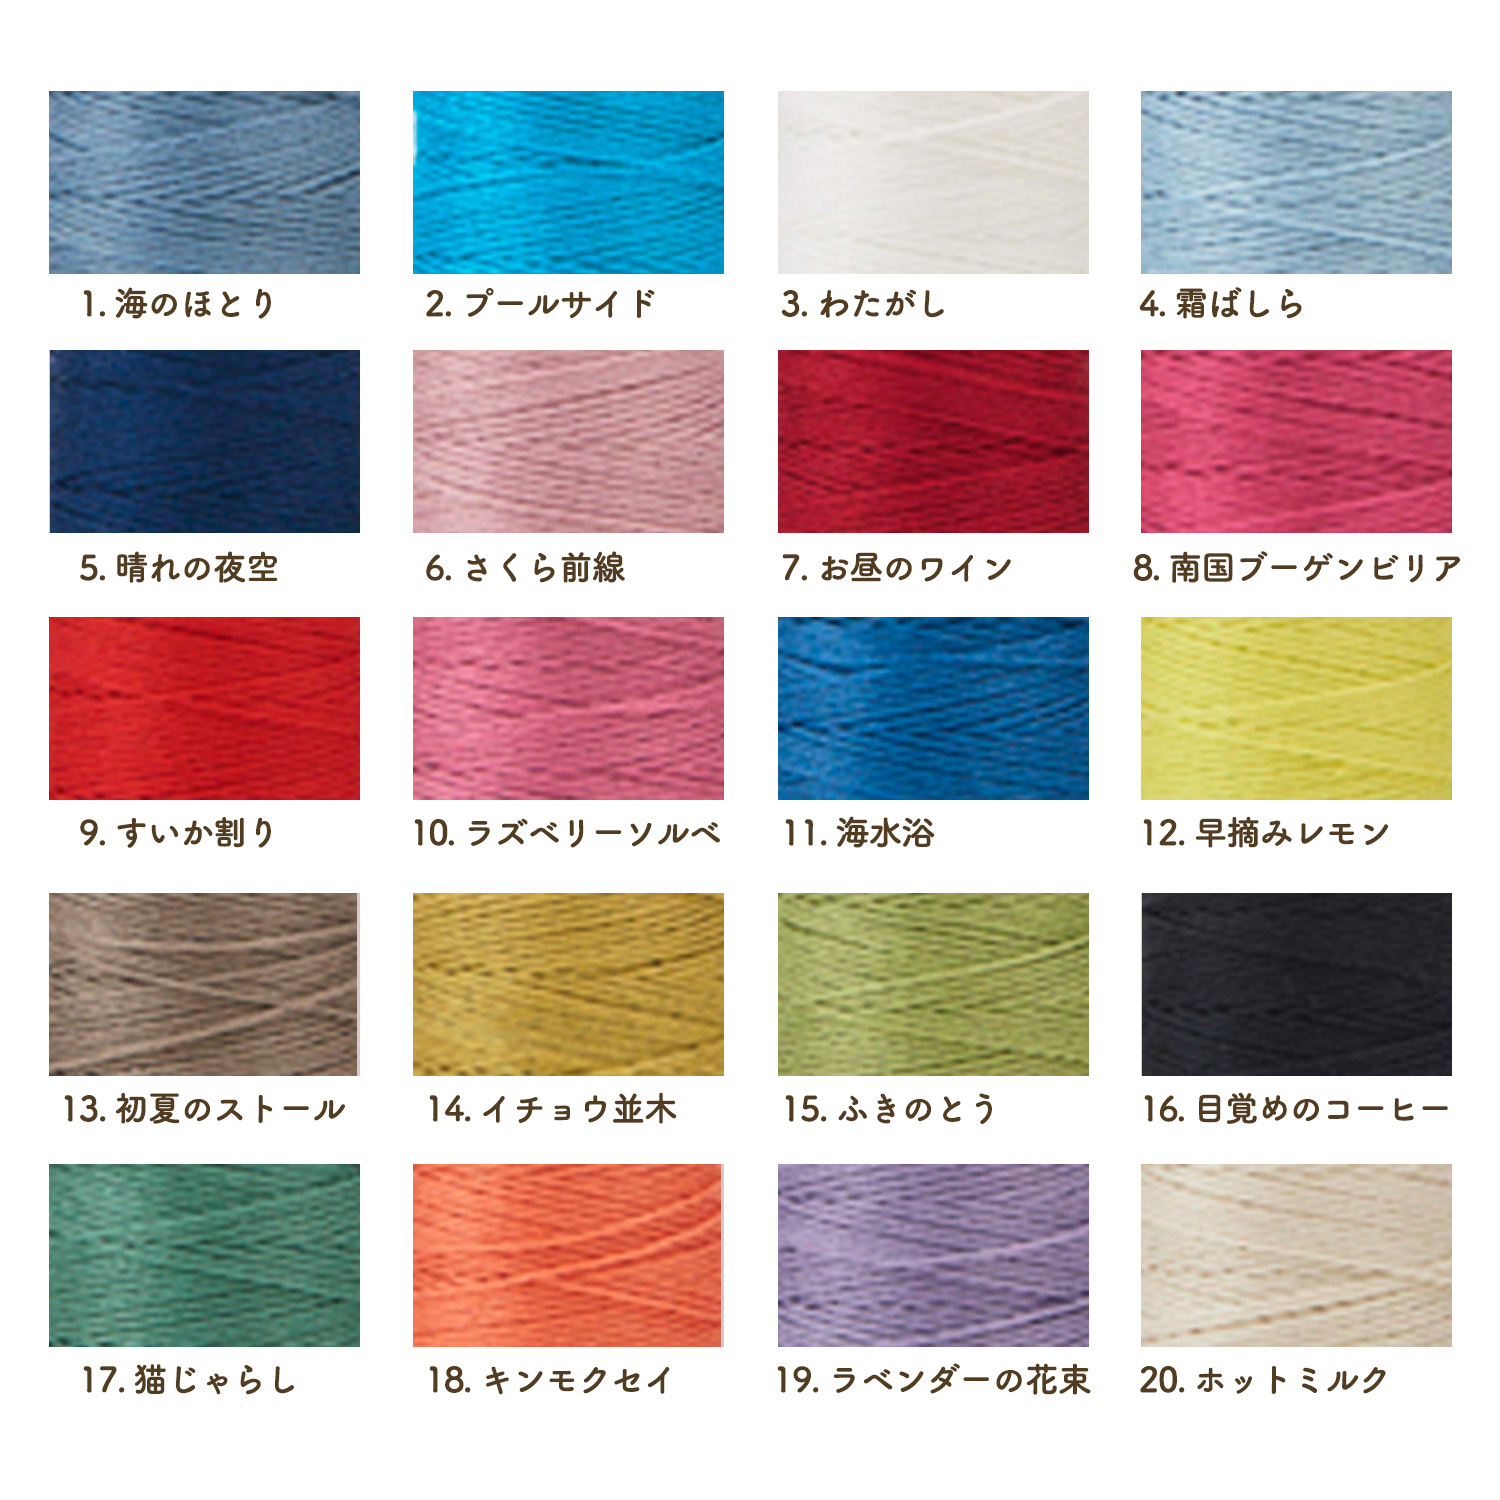 4月24日まで】CS122301-OVER10 コスモ 刺し子糸(単色) - hidamari 